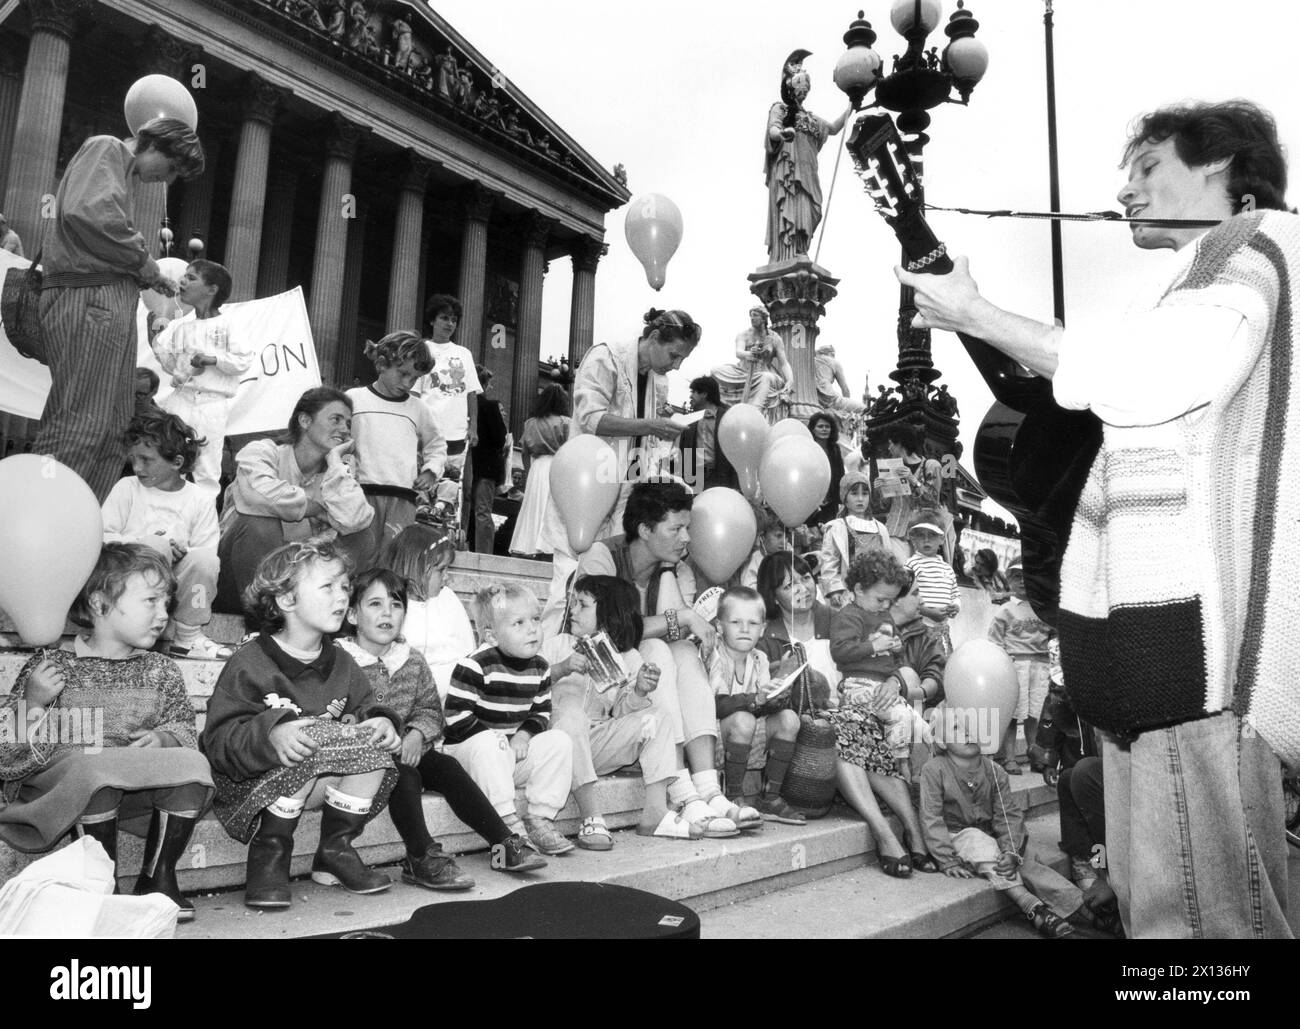 Wien am 18. Juli 1990: Eine Gruppe grüner Alternativen, genannt "Mütter gegen Ozon", protestierte vor dem parlament gegen steigende Umweltbelastungen. - 19900718 PD0002 - Rechteinfo: Rechte verwaltet (RM) Stockfoto